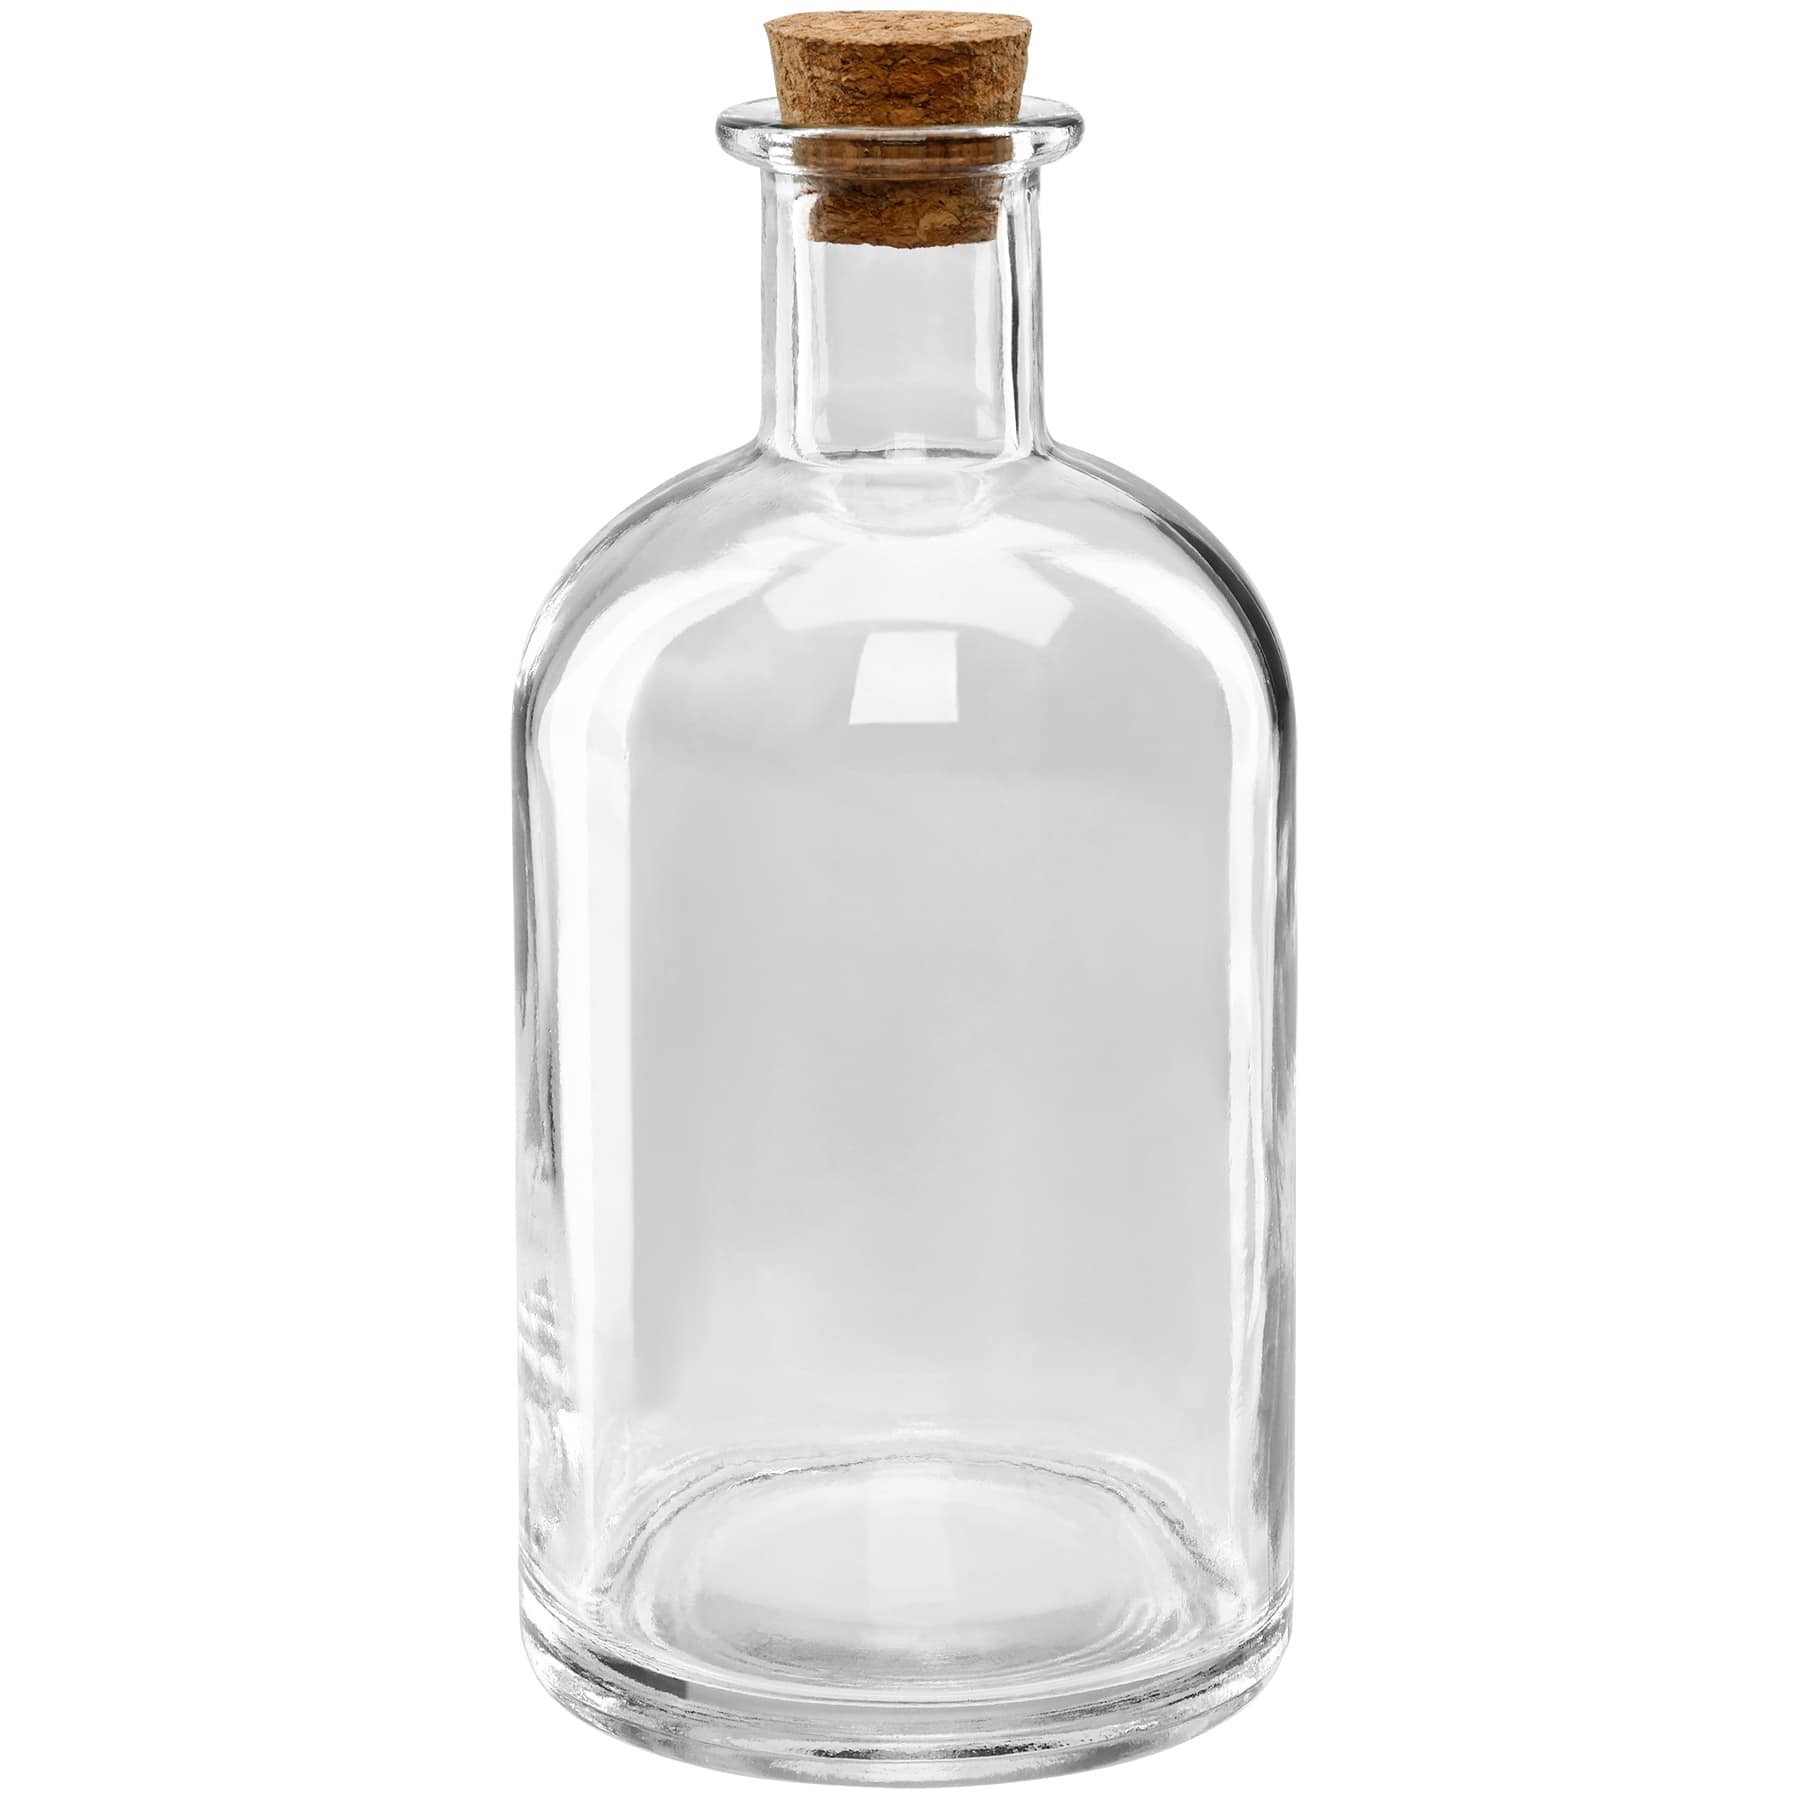 Glass Bottles, Glass Bottles Wholesale, Small Glass Bottles in